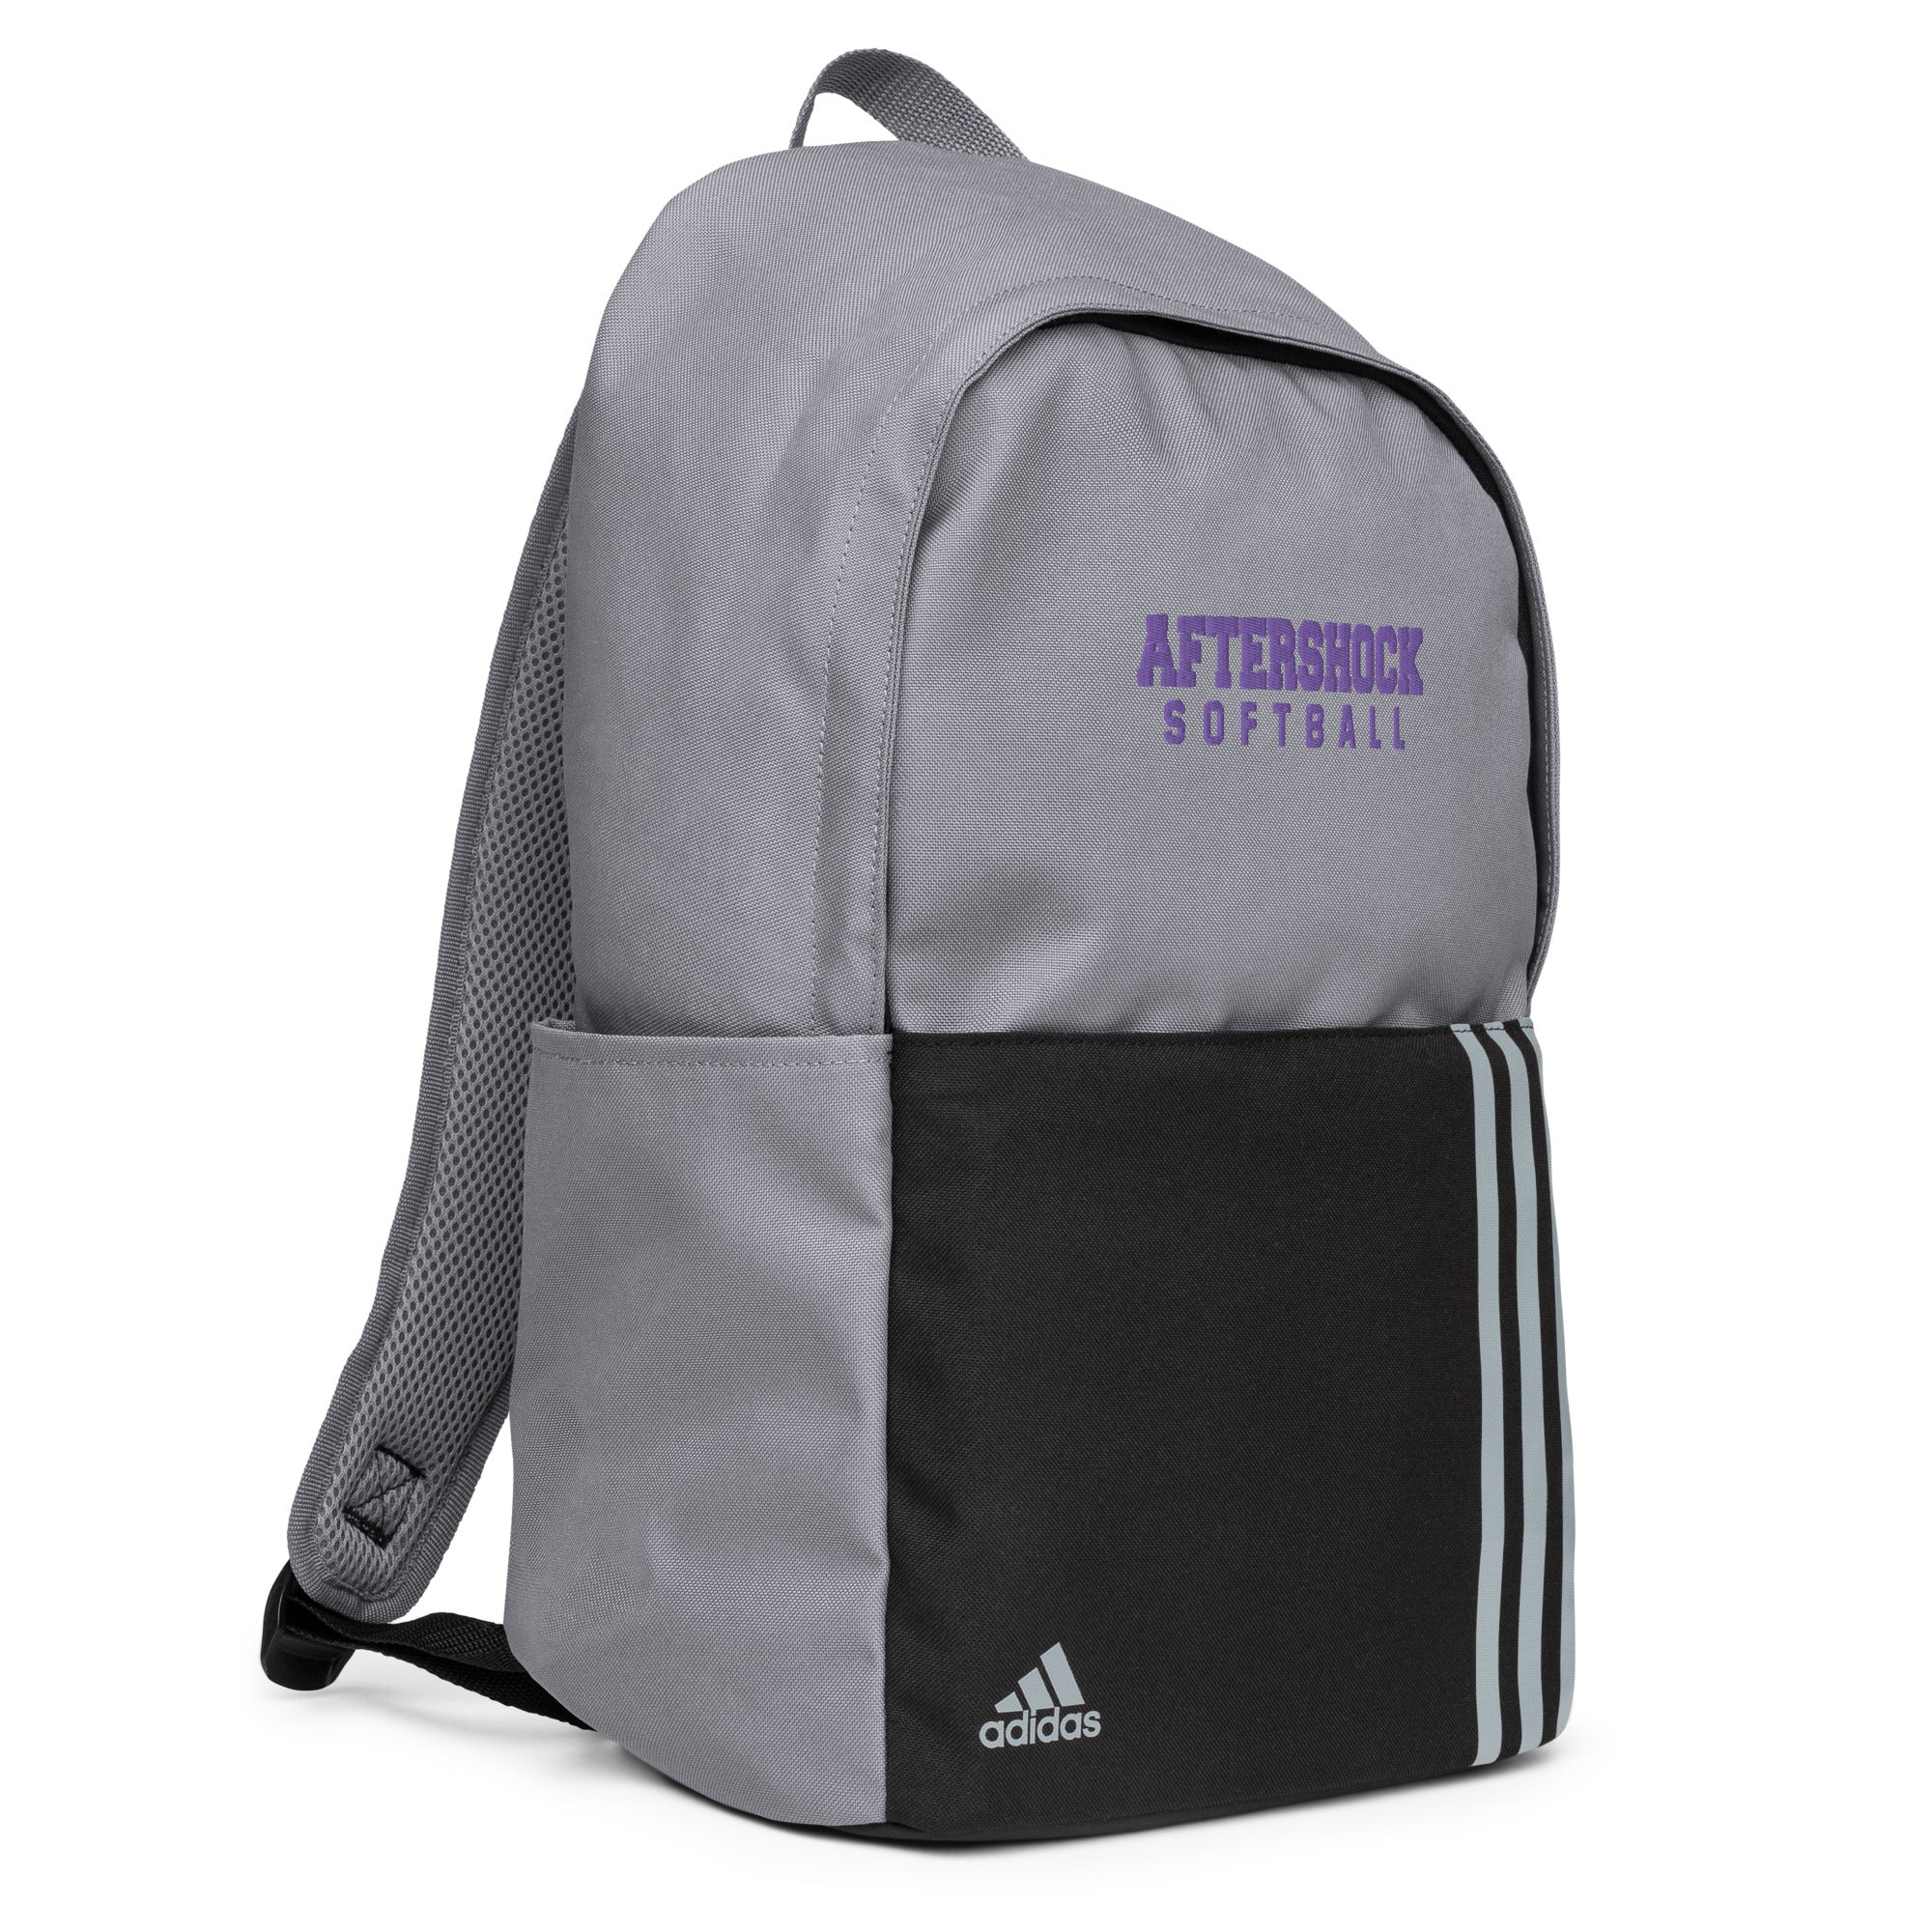 Aftershock Adidas backpack